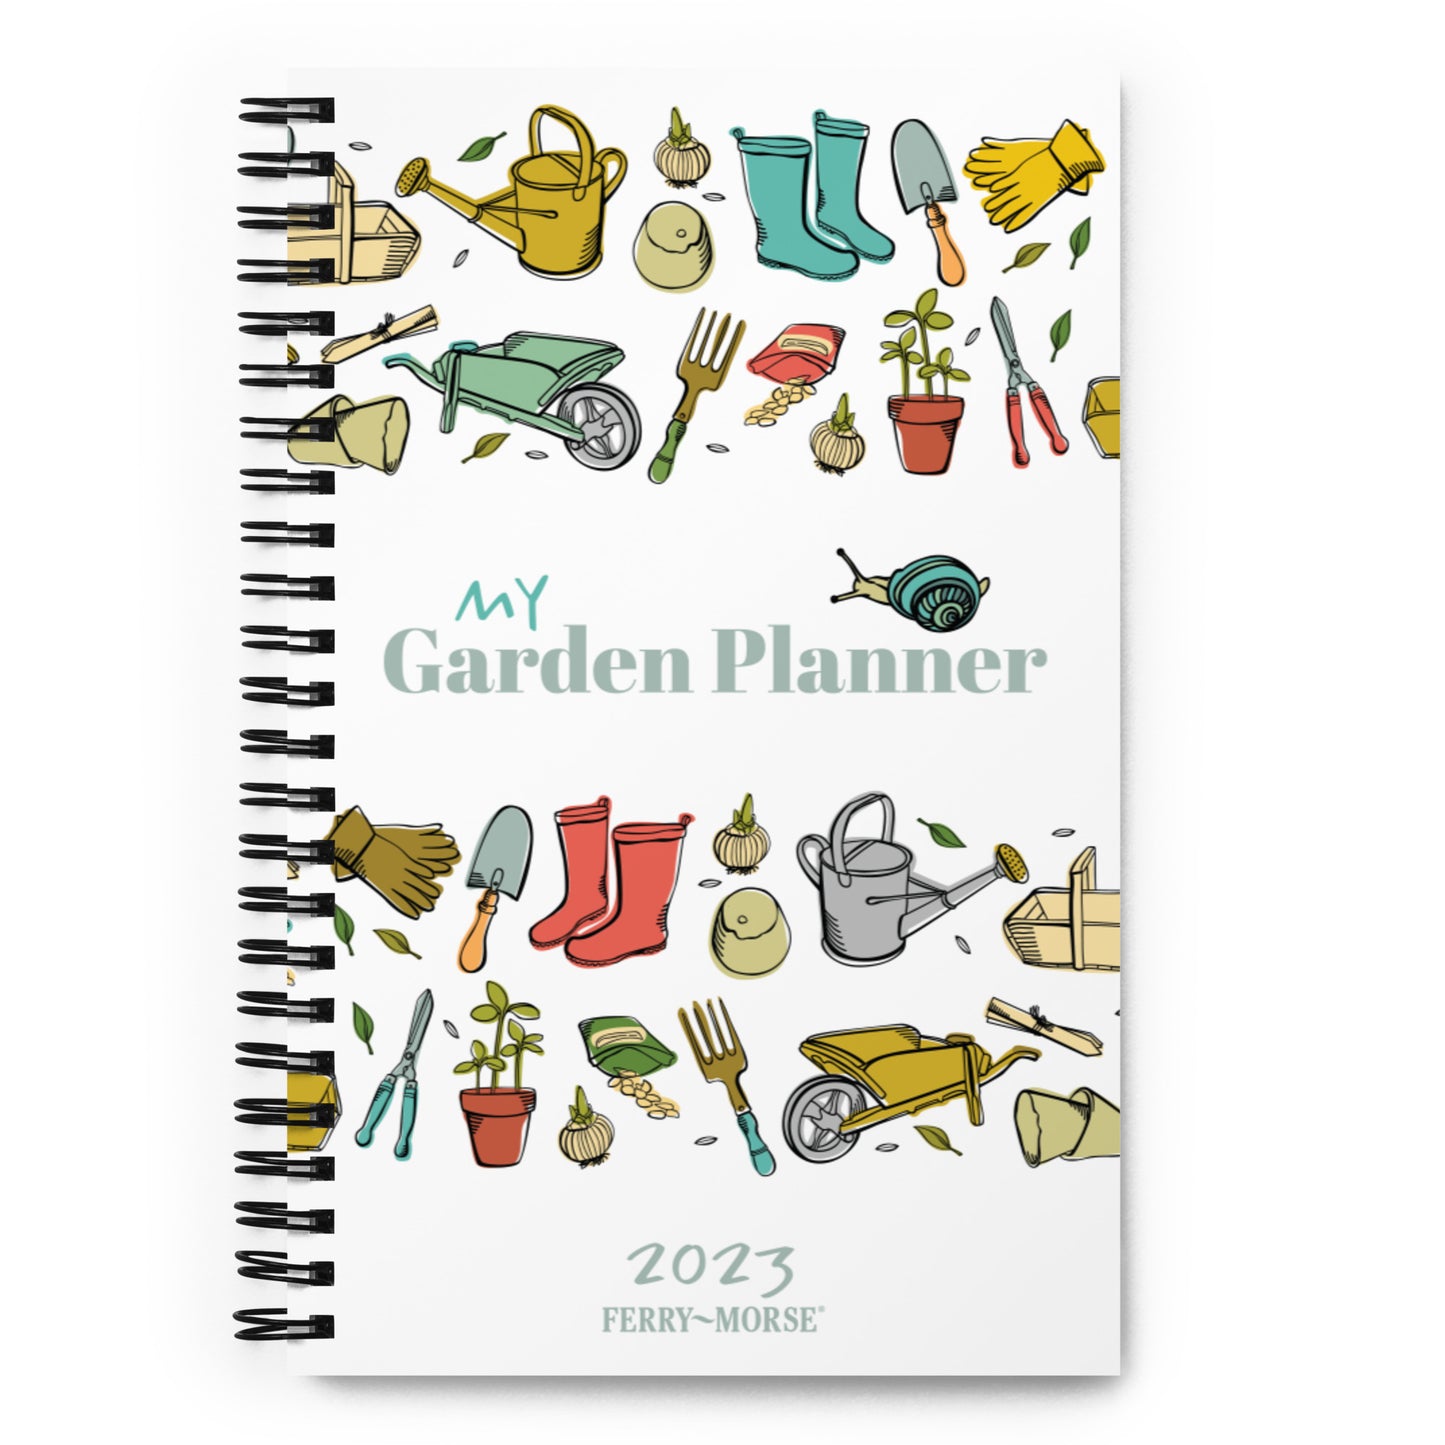 "My Garden Planner 2023" Spiral Notebook